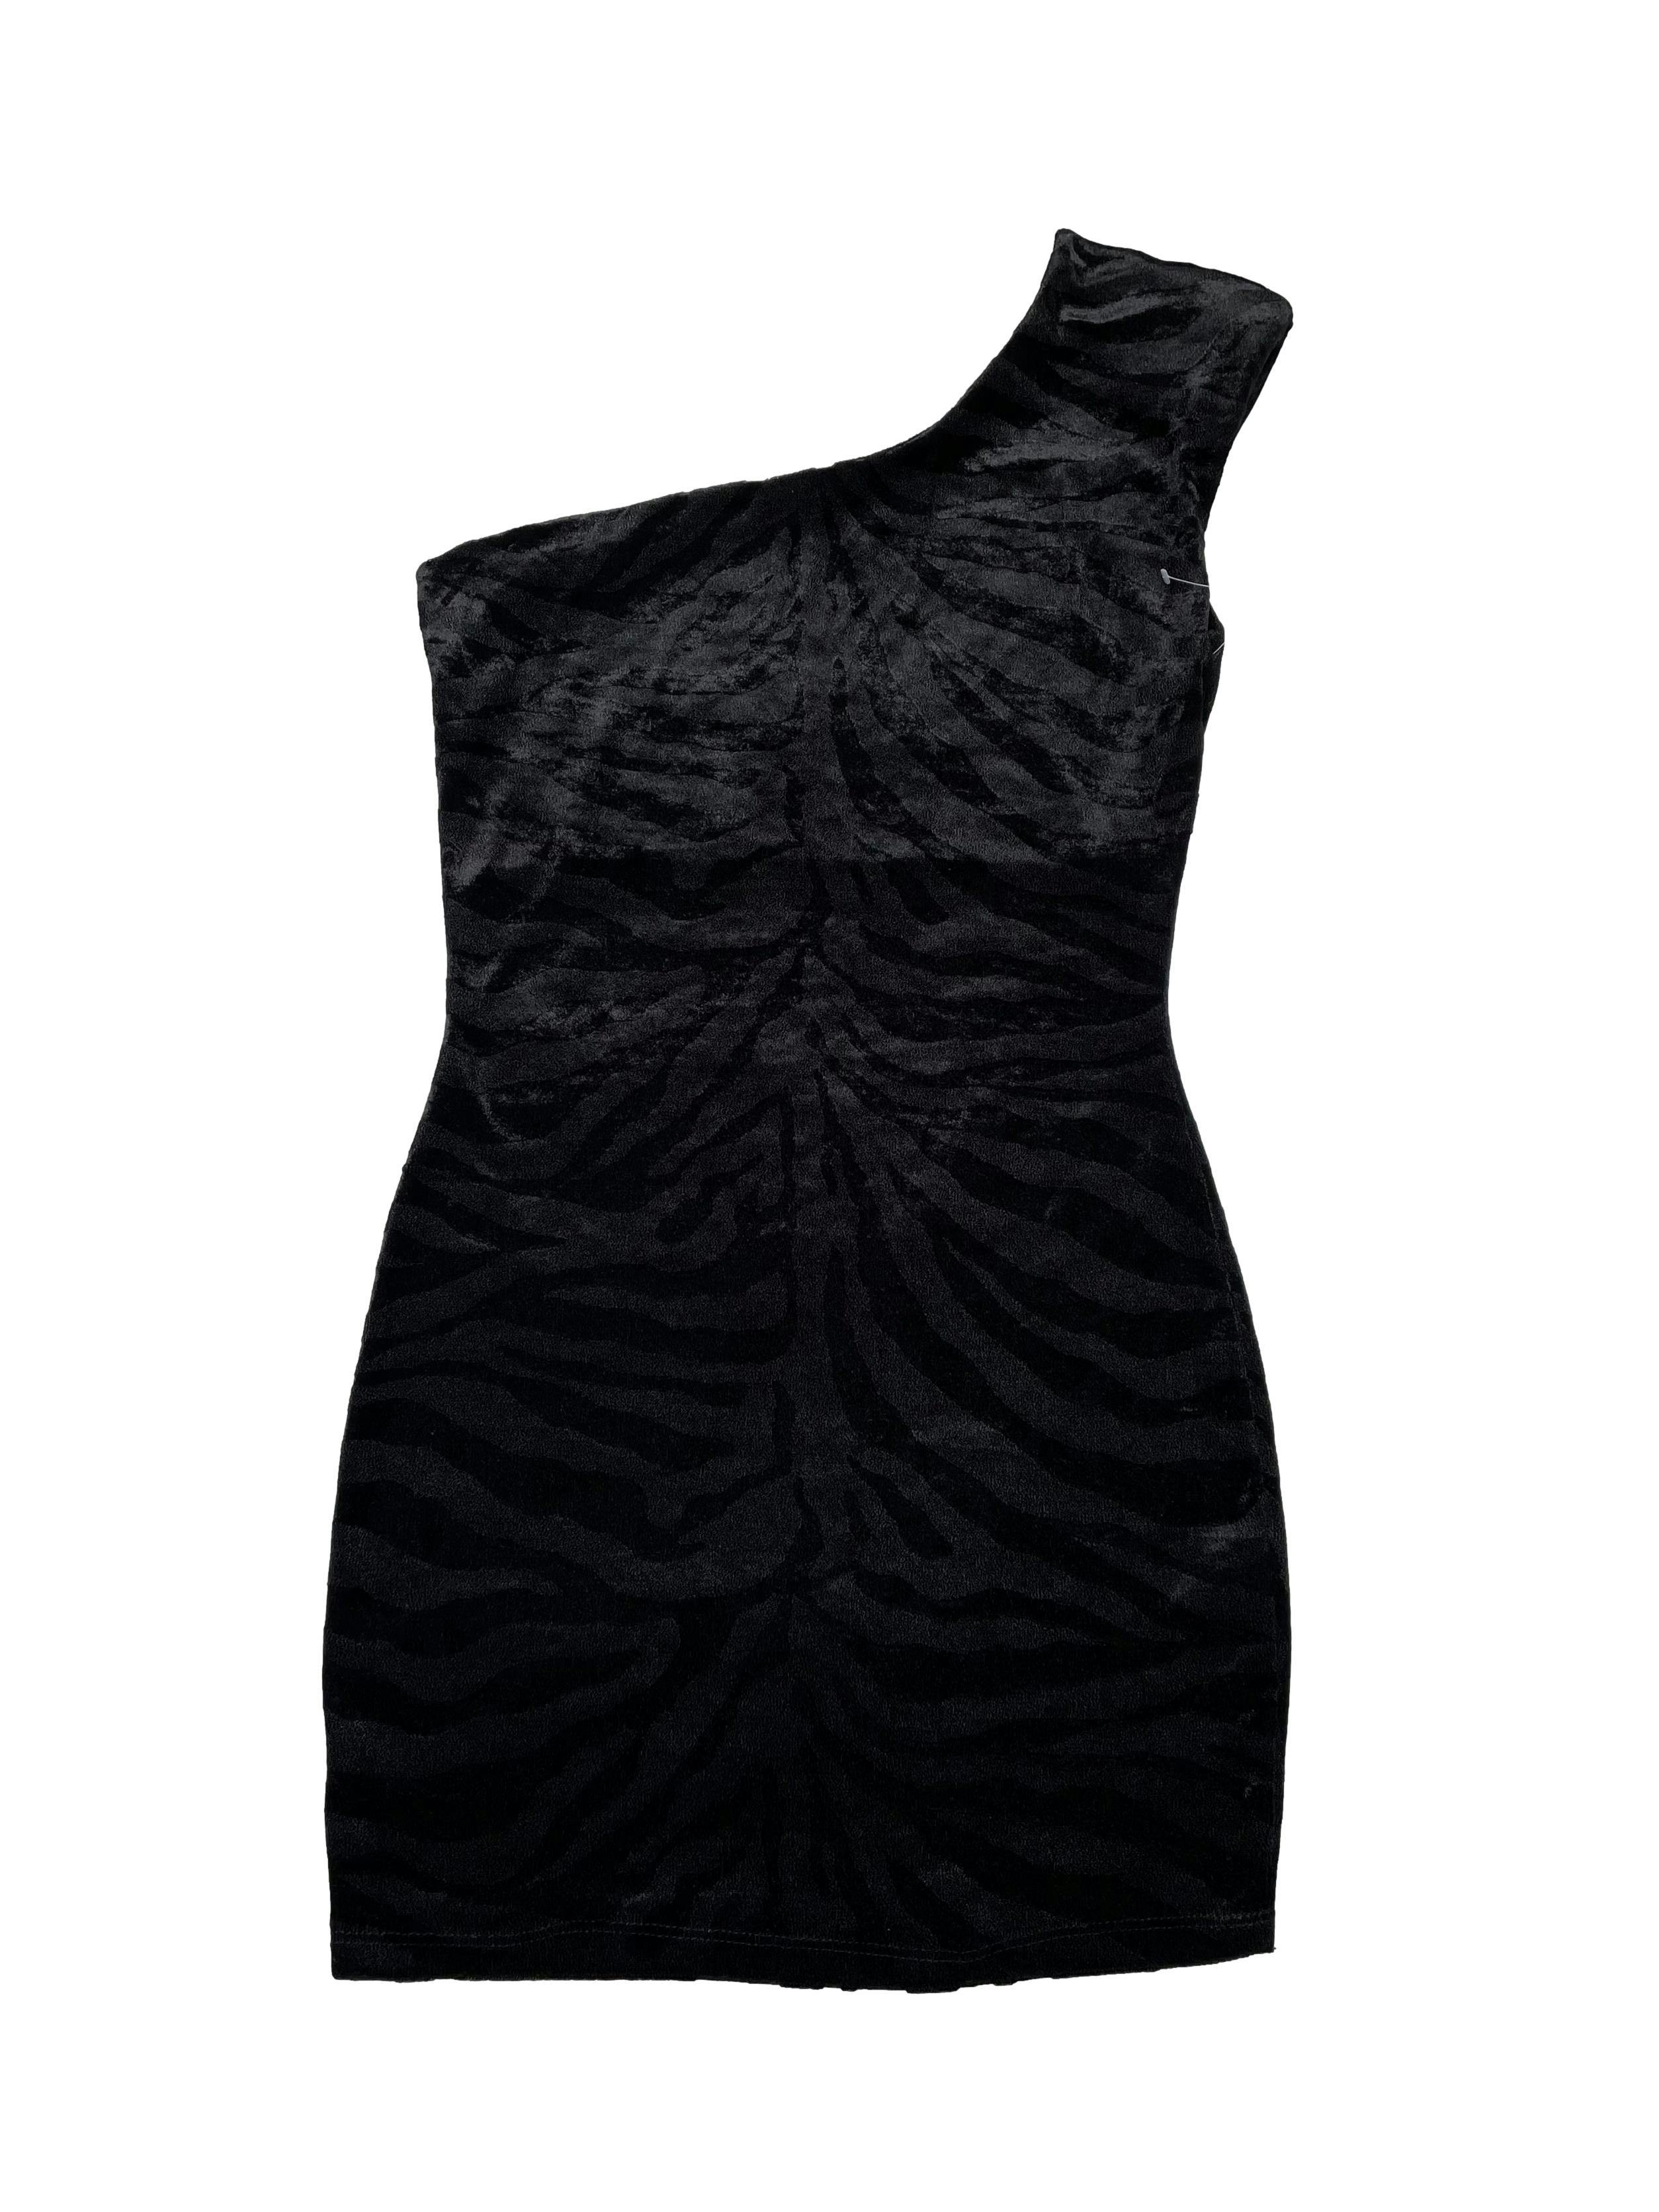 Vestido Symphony de tela tipo lush animal print negro, corte tubo, one shoulder con hombrera, es ligeramente stretch. Busto 96cm Largo 82cm. Nuevo.